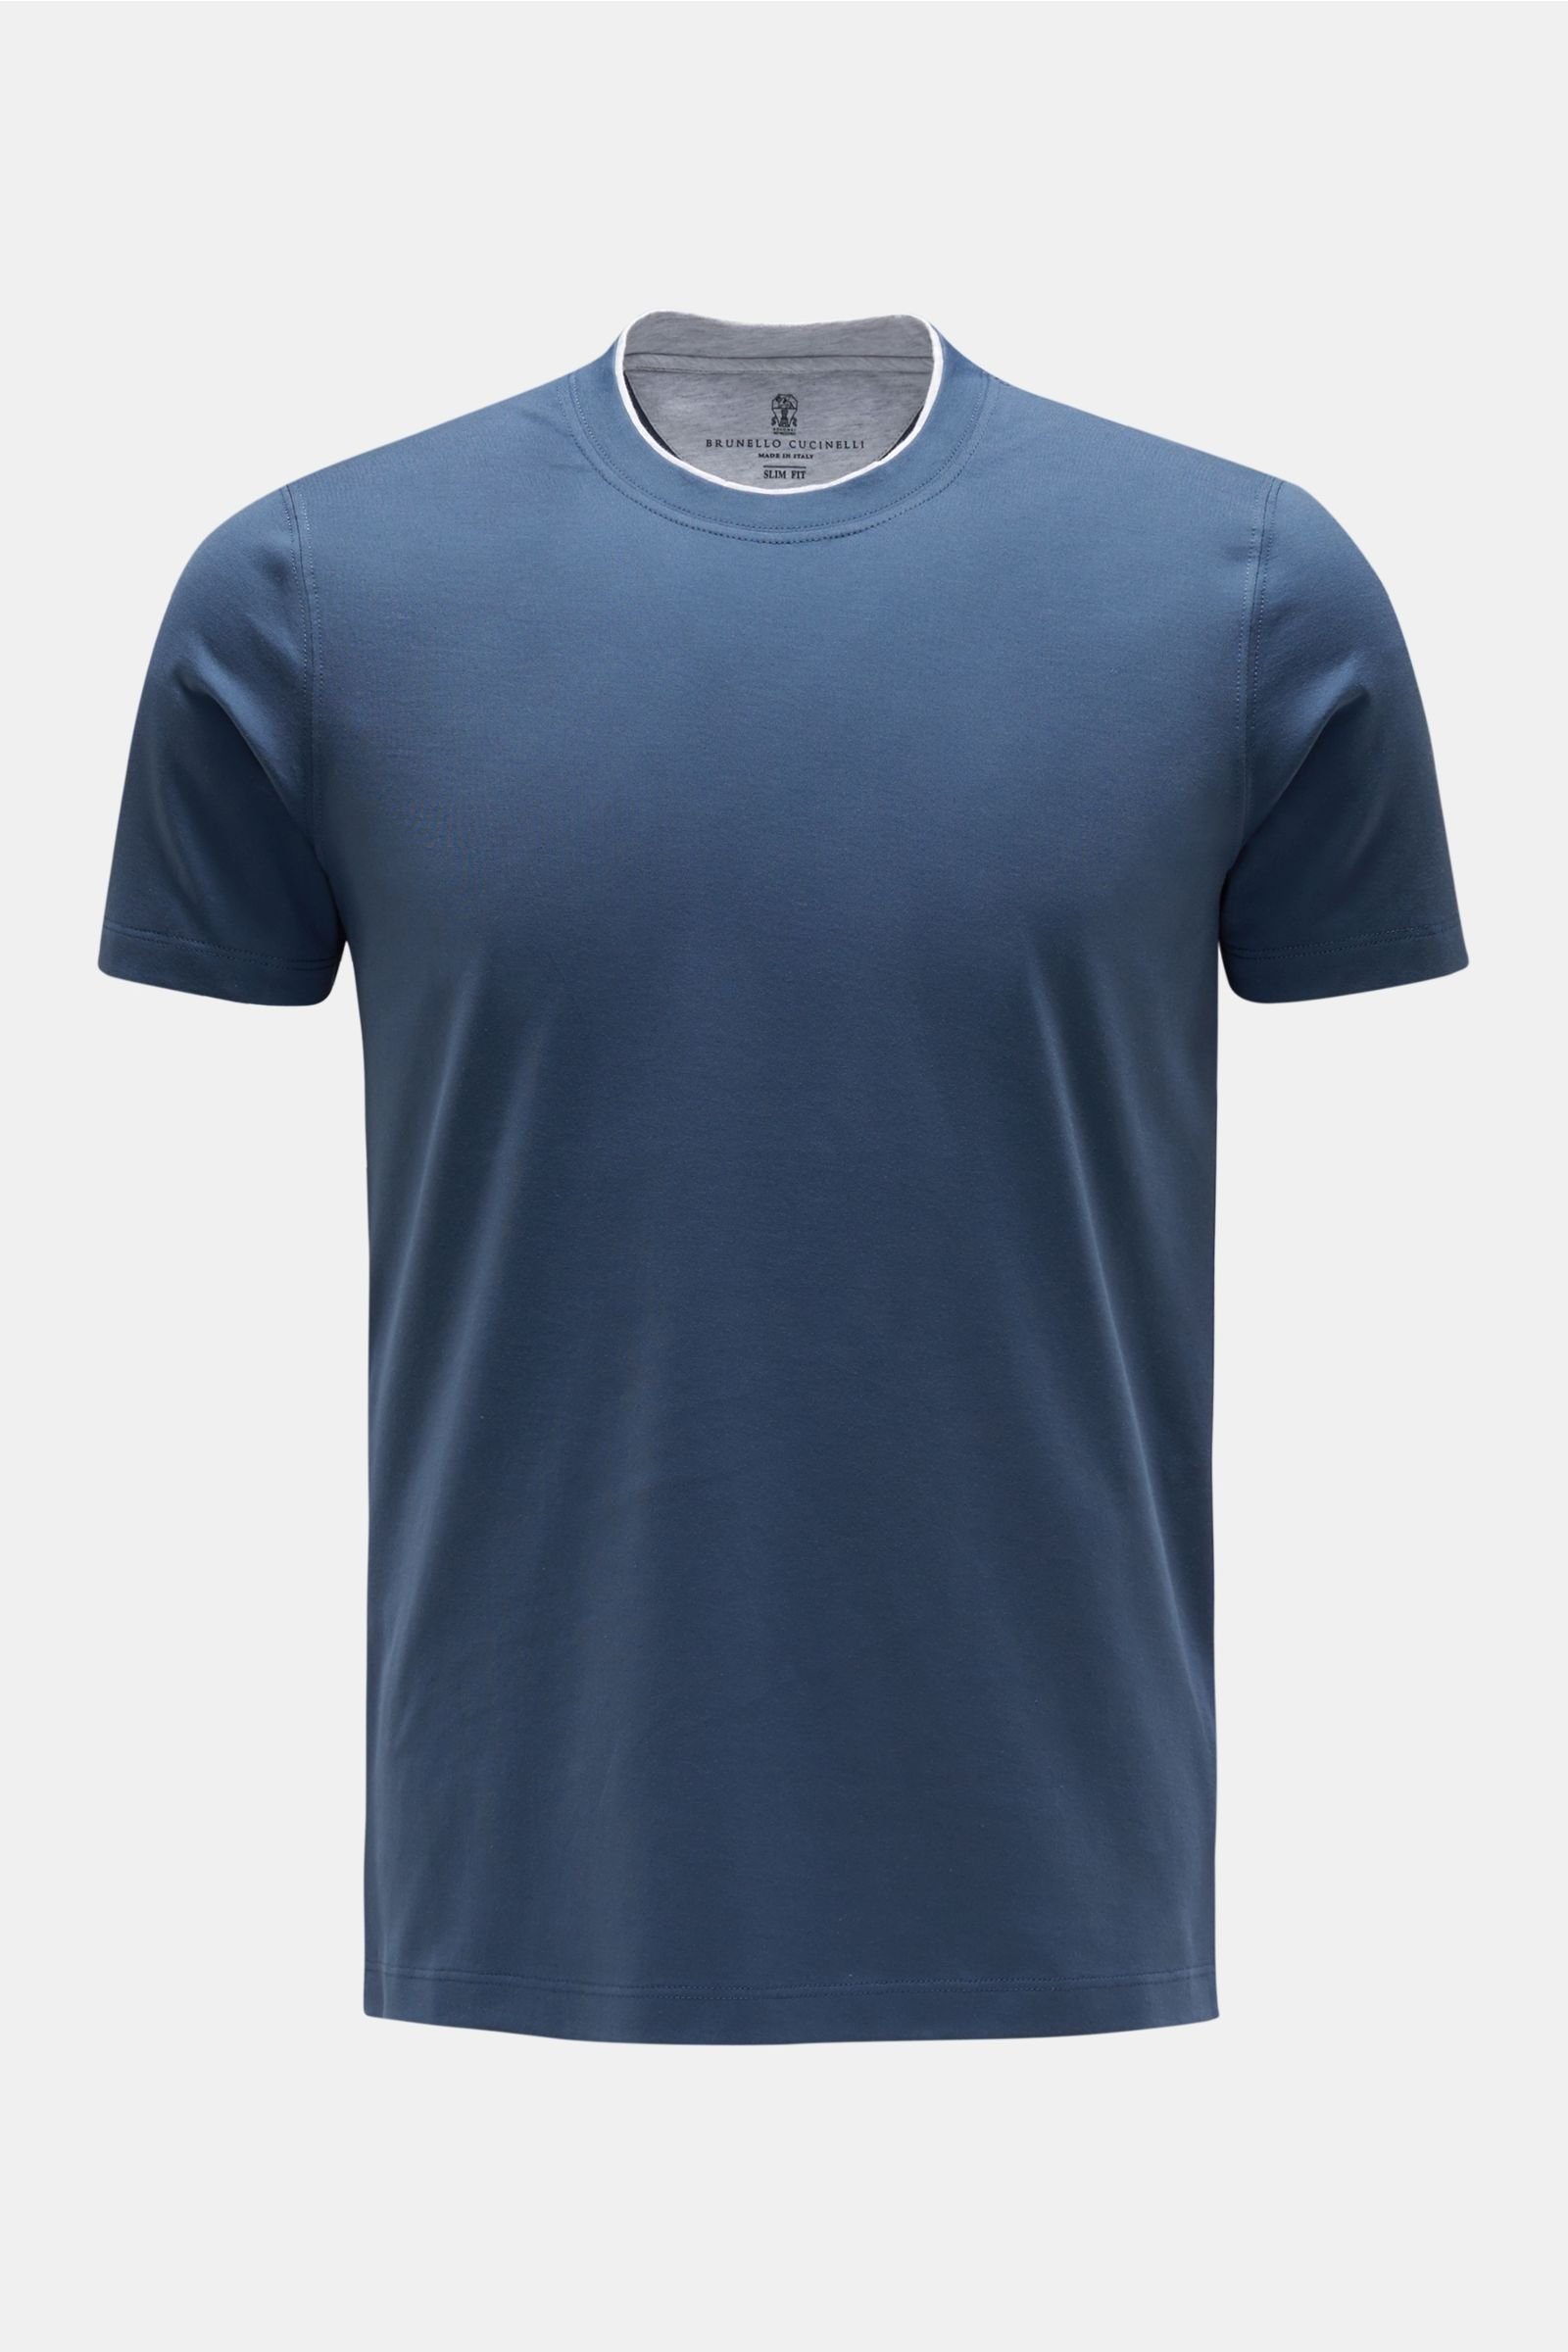 Crew neck T-shirt dark blue